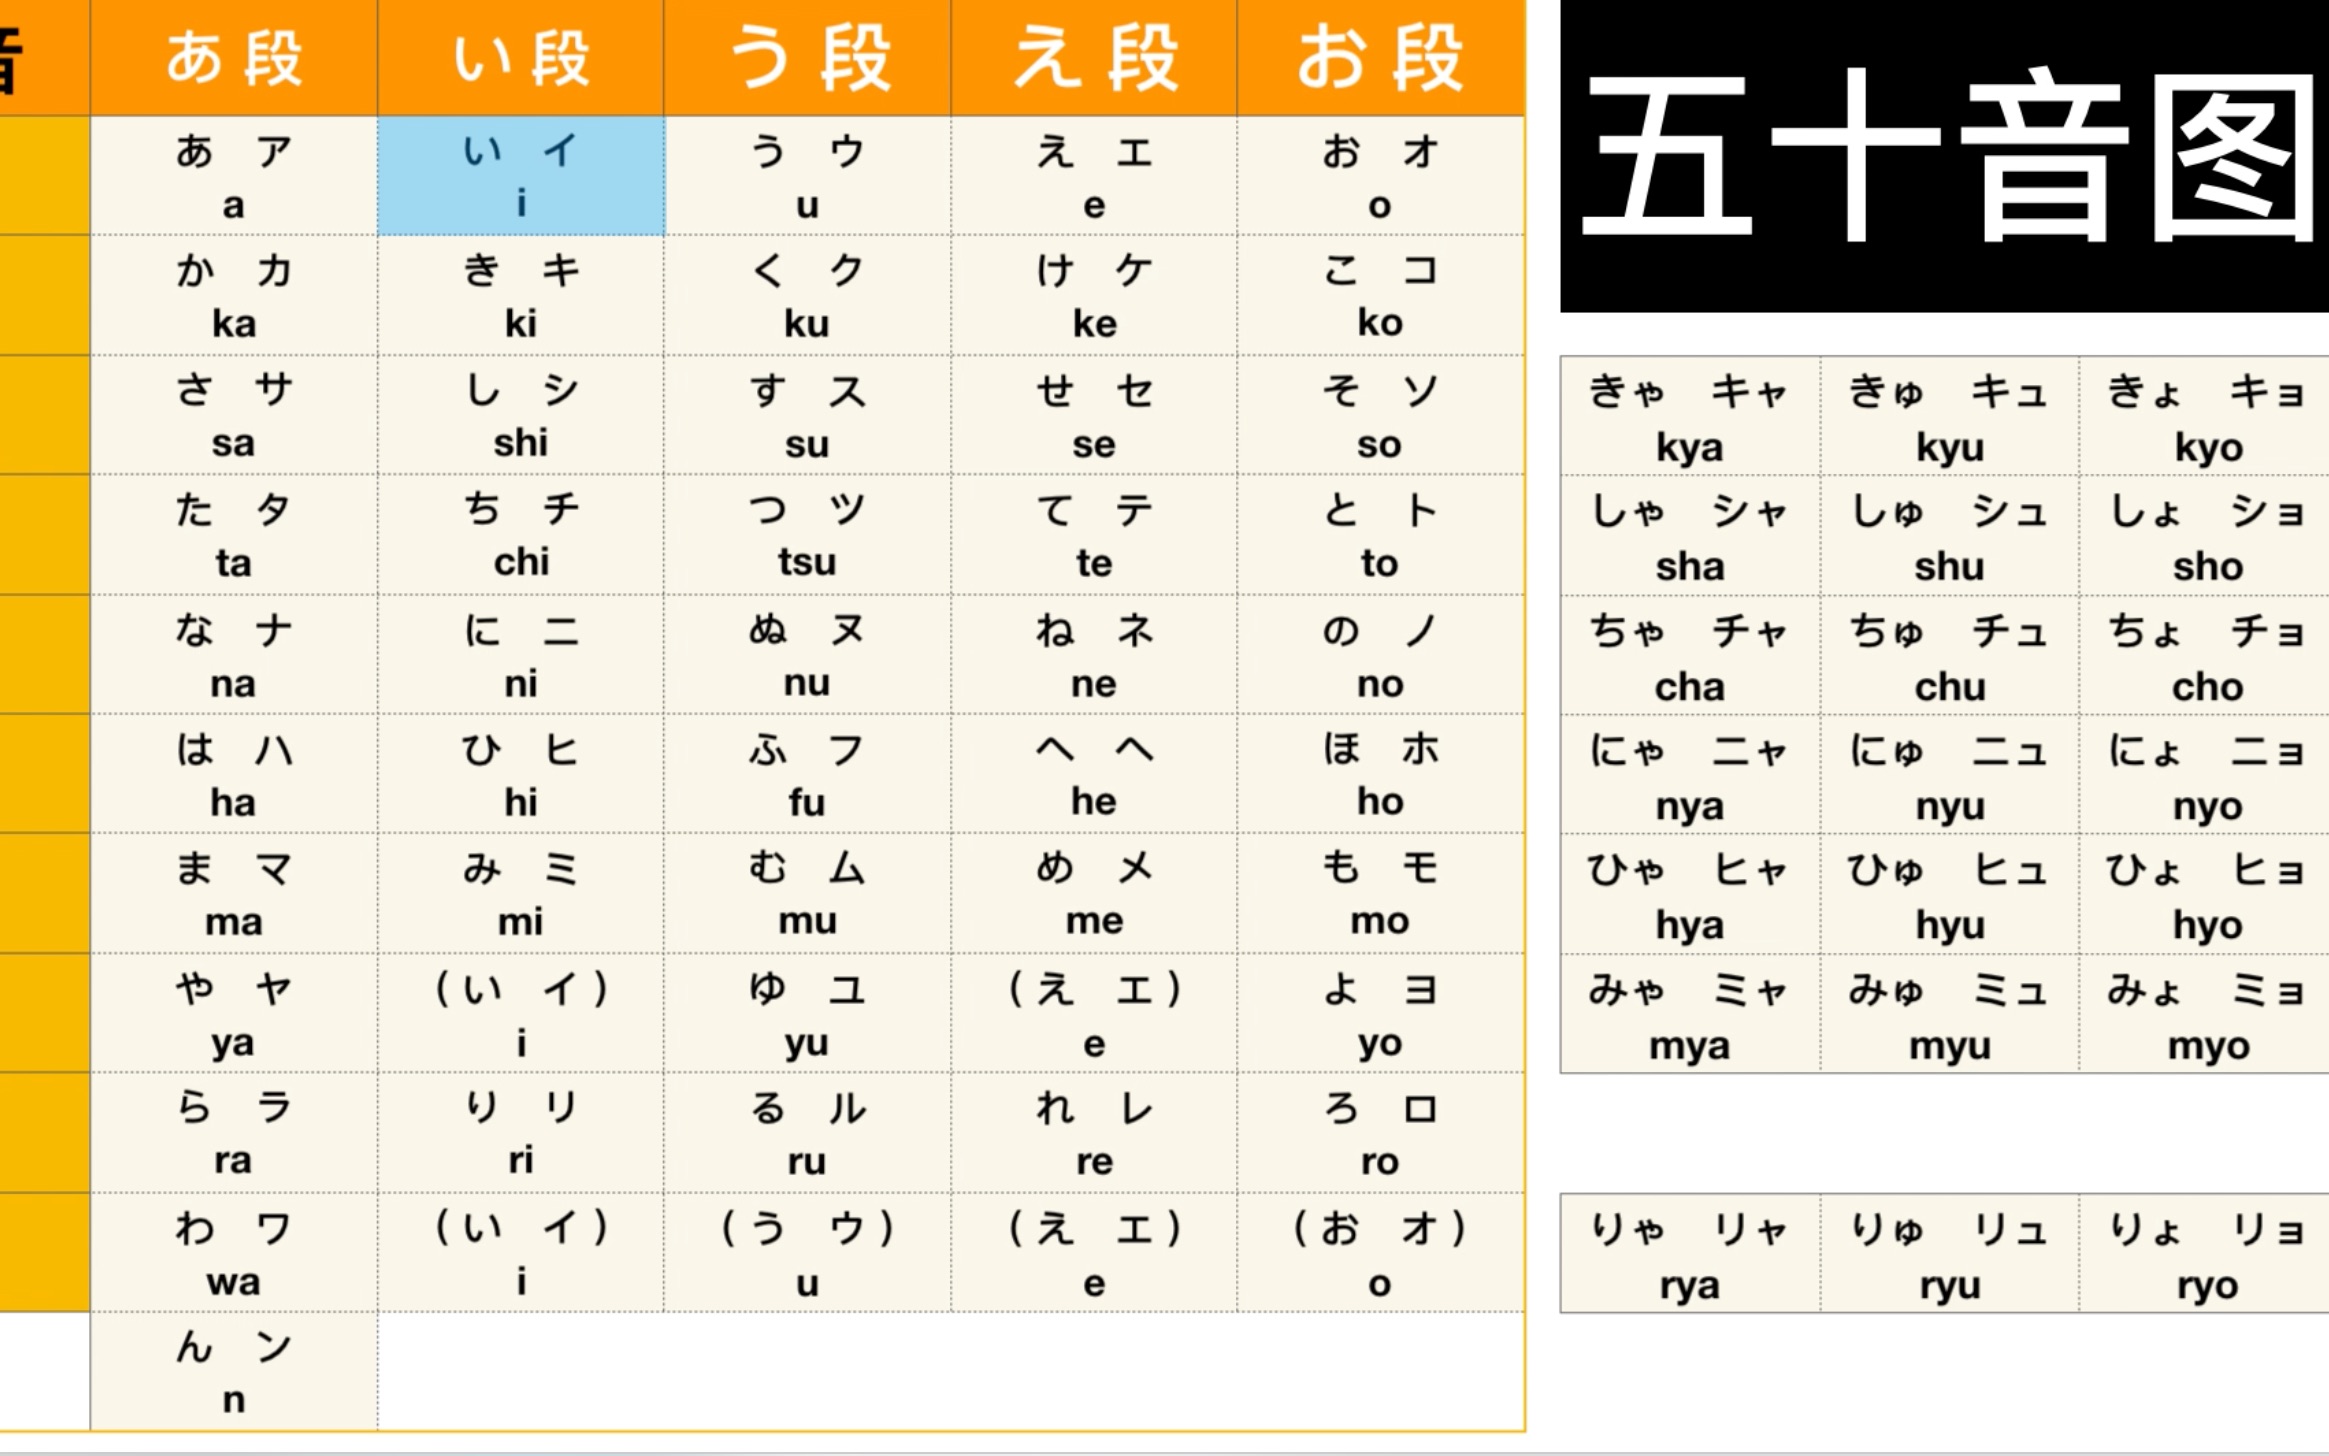 【自学日语】中日交流标准日本语 日语五十音图发音,轻松学习,so easy